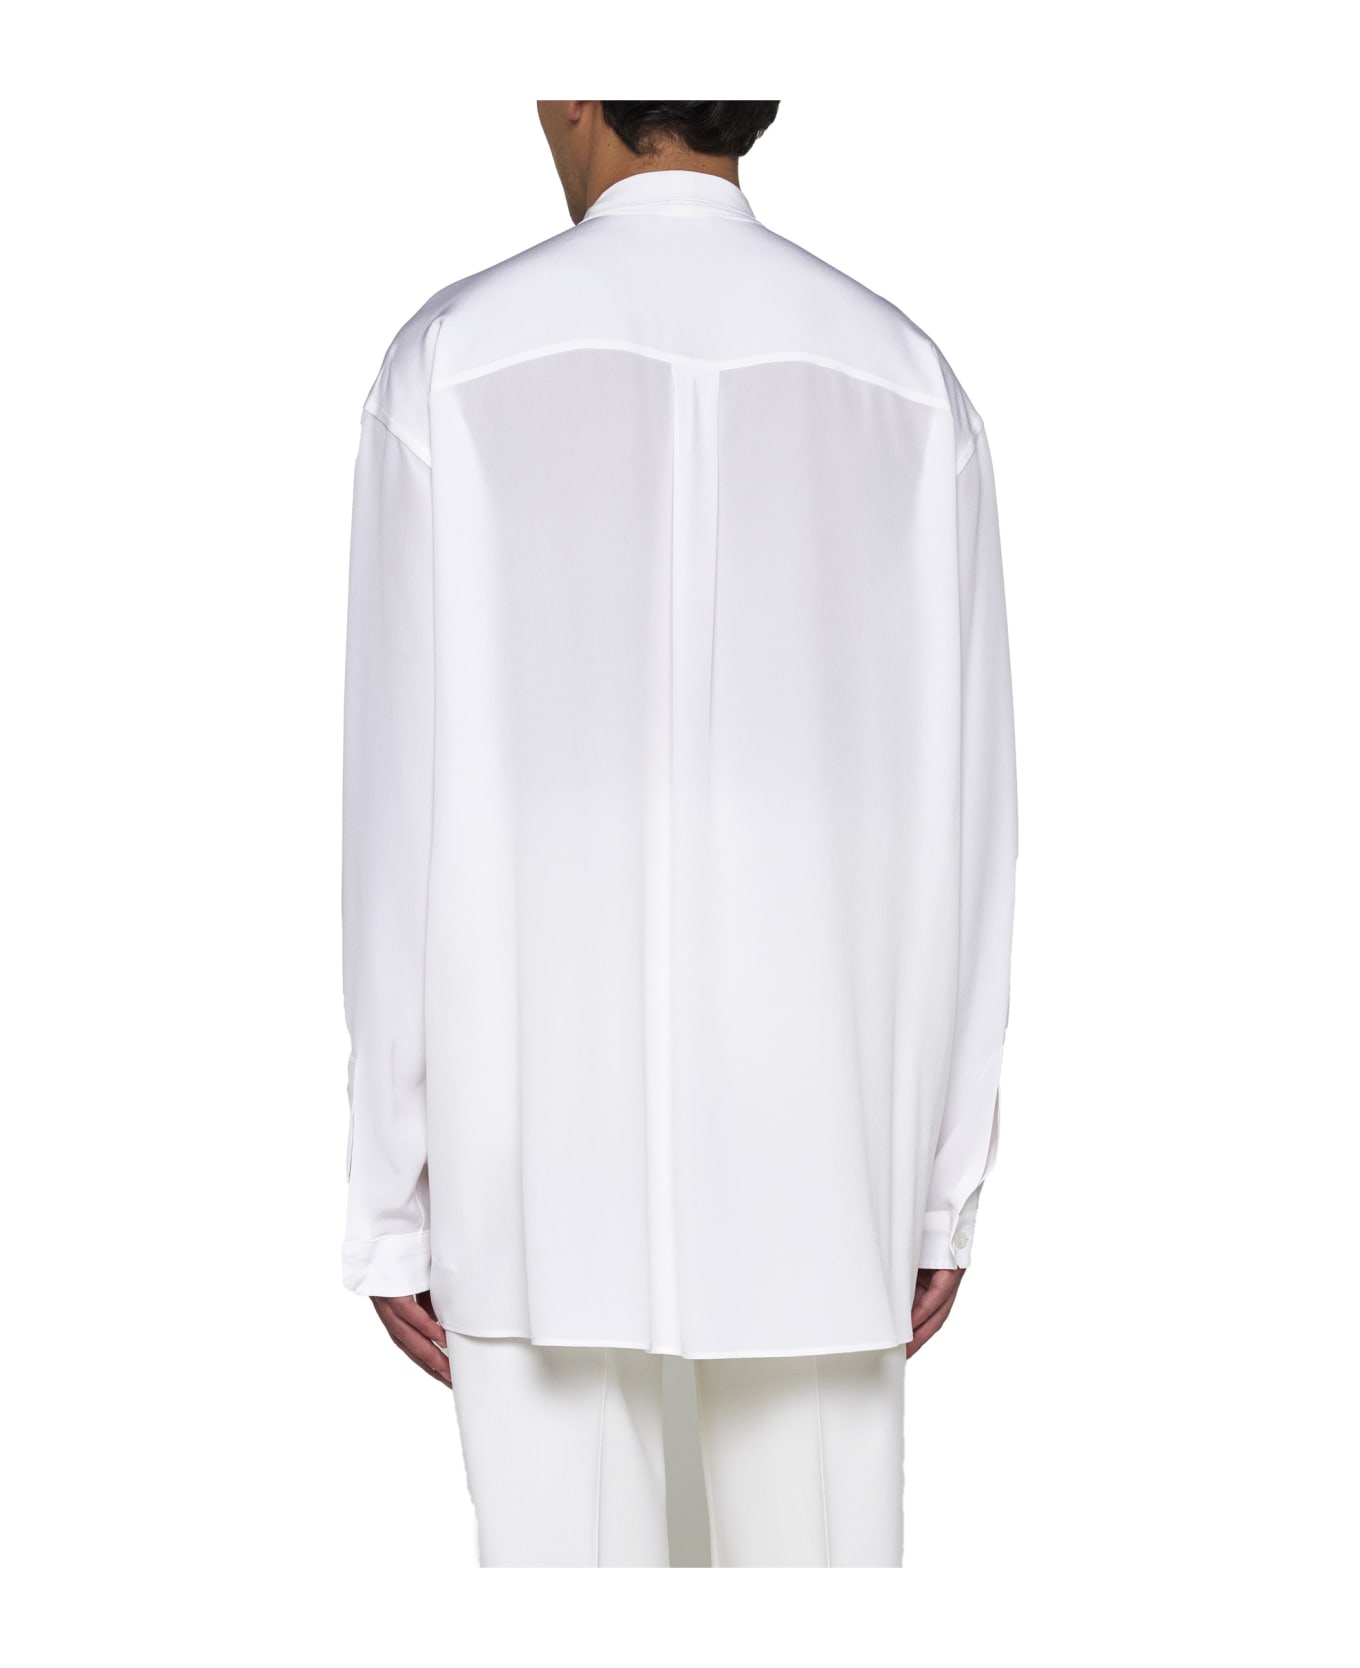 Dolce & Gabbana Scarf Detailed Shirt - Bianco otticco